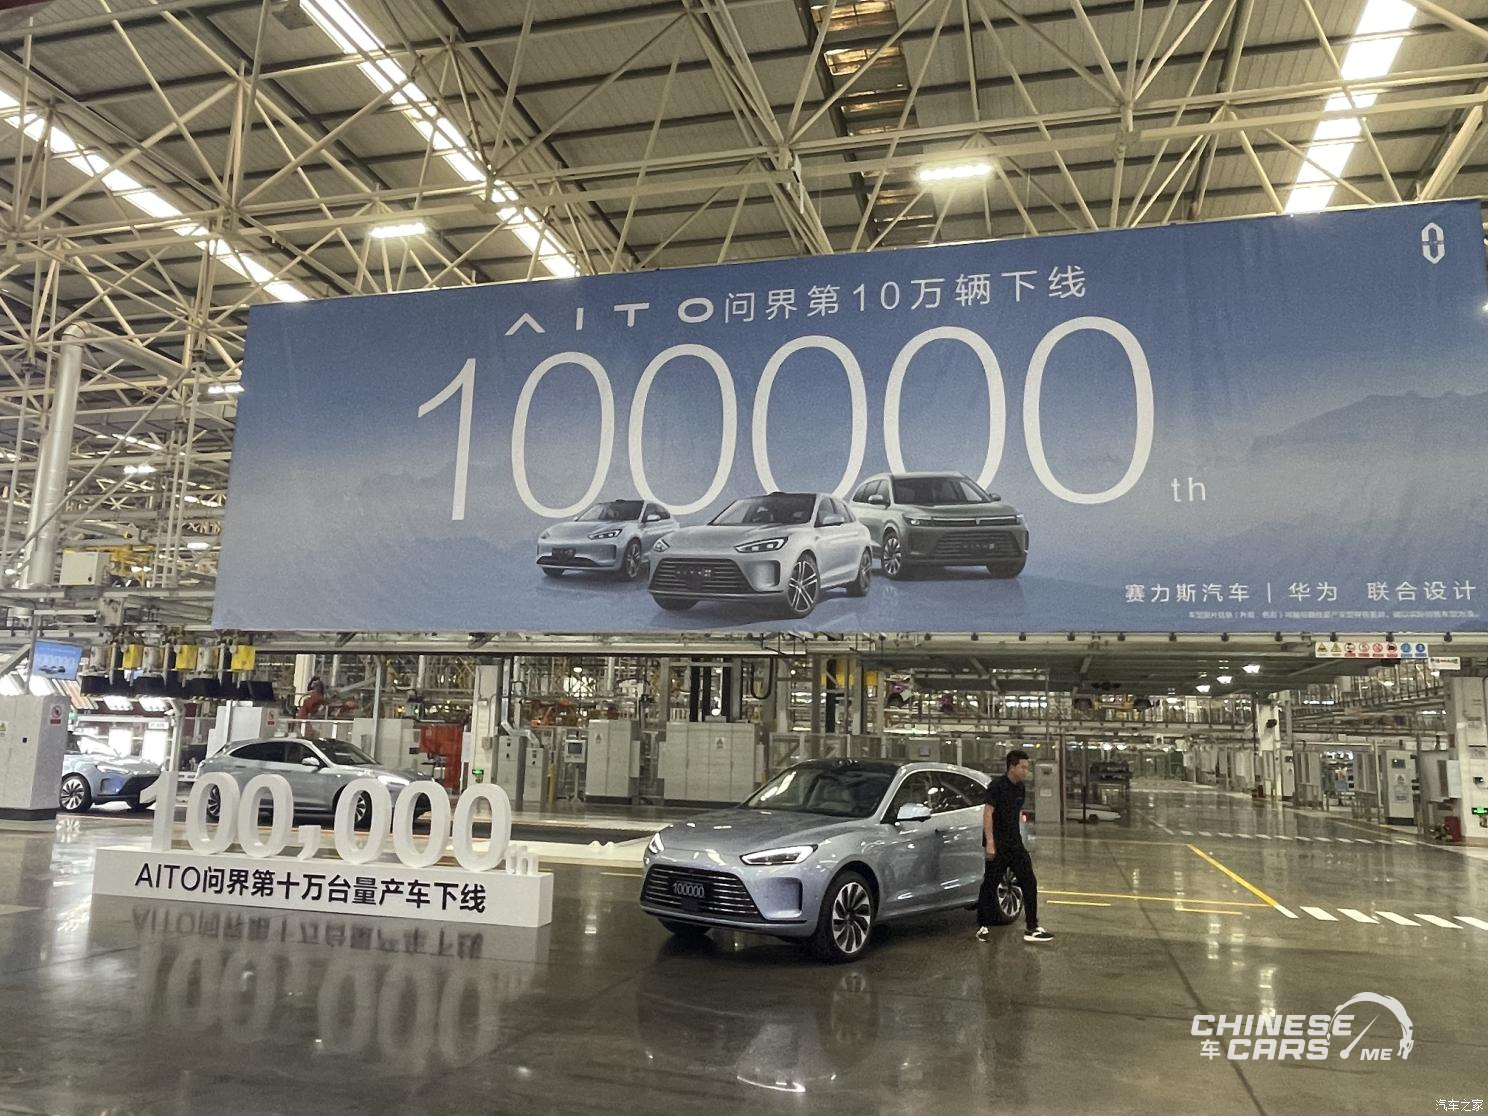 شبكة السيارات الصينية – علامة Aito من هواوي تحتفل بالسيارة رقم 100 ألف خارج خط الإنتاج!